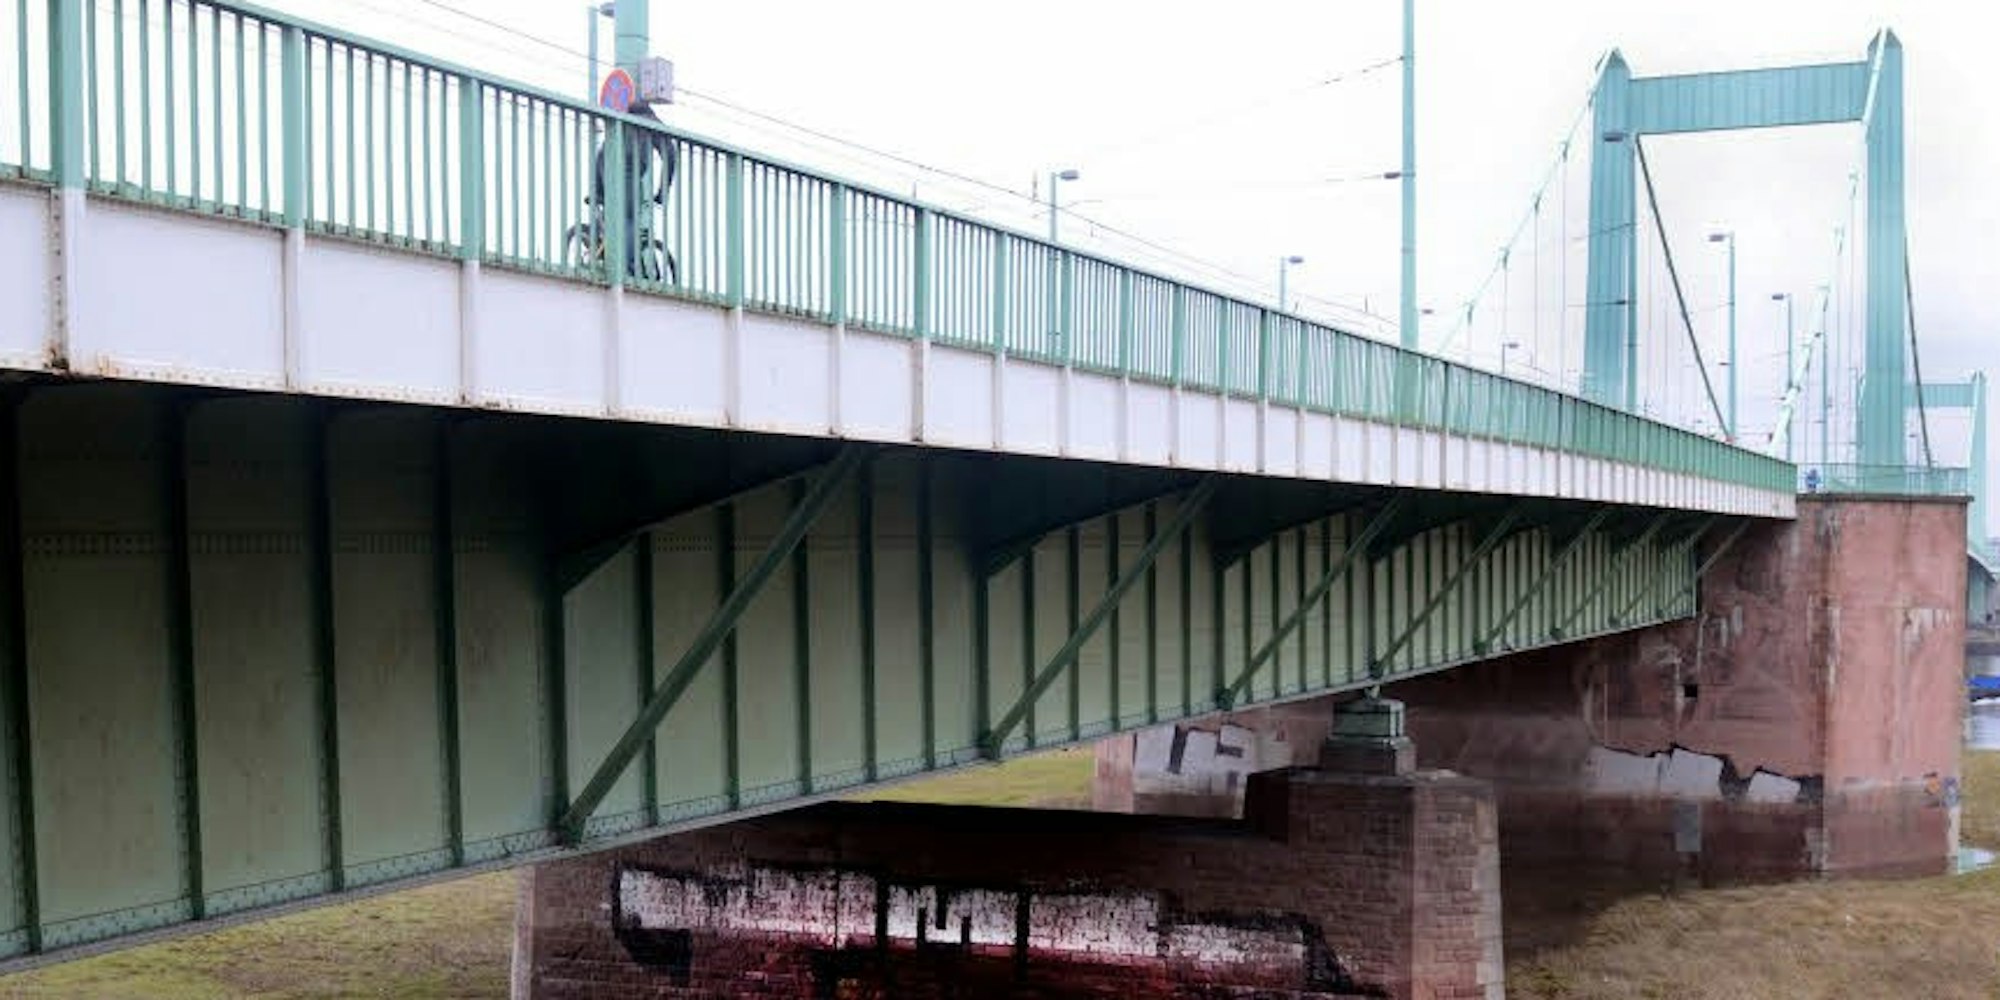 An der Mülheimer Brücke wurde eine Bombe gefunden. (Bild: dpa)